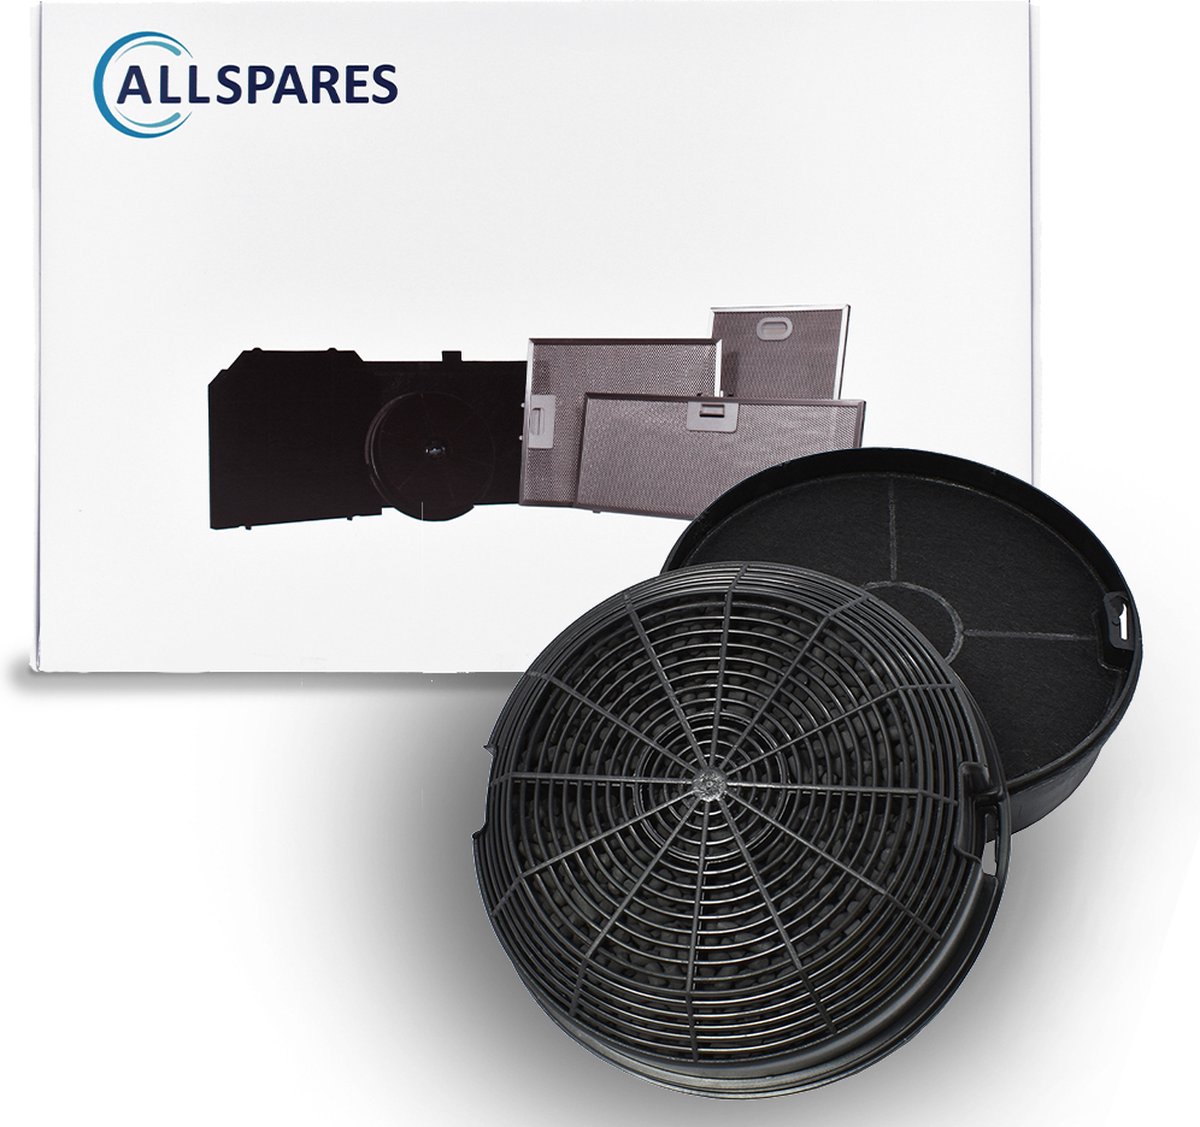 AllSpares Koolstoffilter (2st.) voor afzuigkappen geschikt voor o.a. AEG-Electrolux Elica Type 47 / CFC0141497 / F00479/1S en Whirlpool AMC023 (Ø150mm)